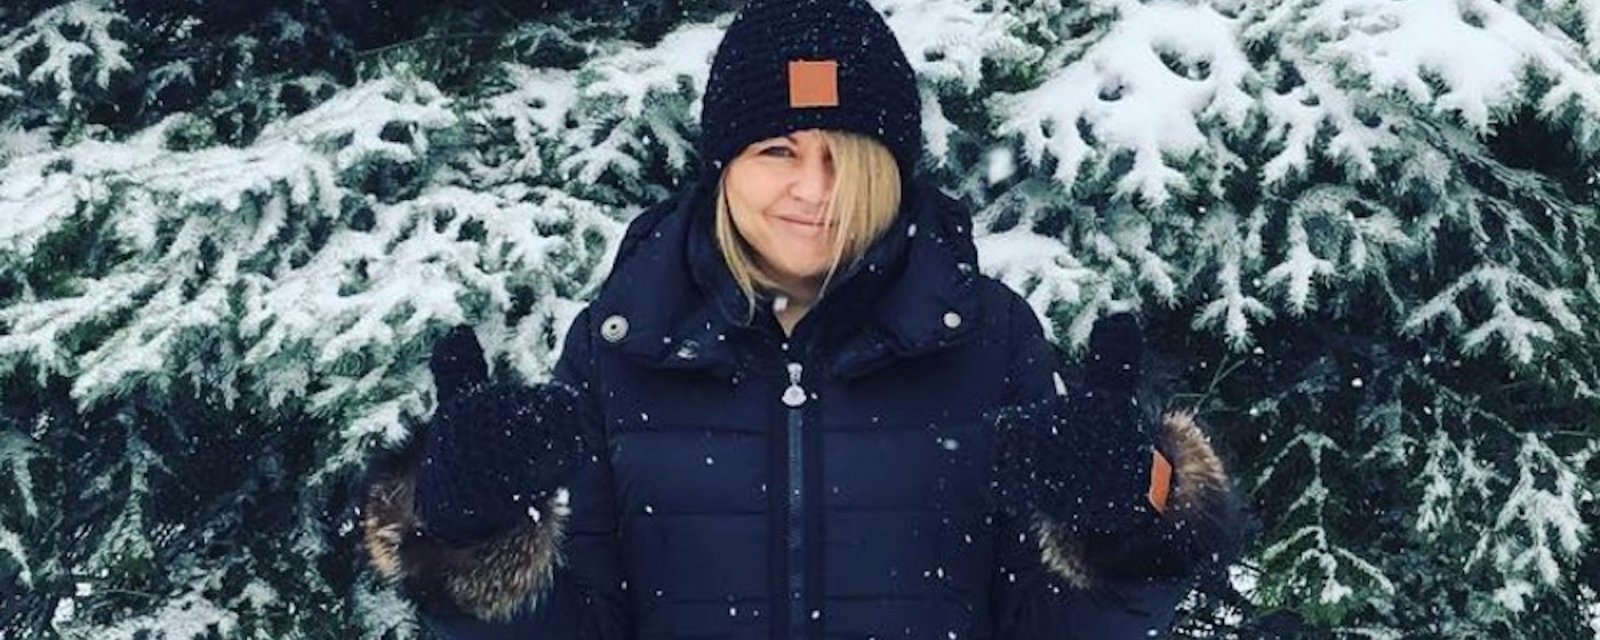 Les 7 plus belles photos de stars québécoises à la première neige! 